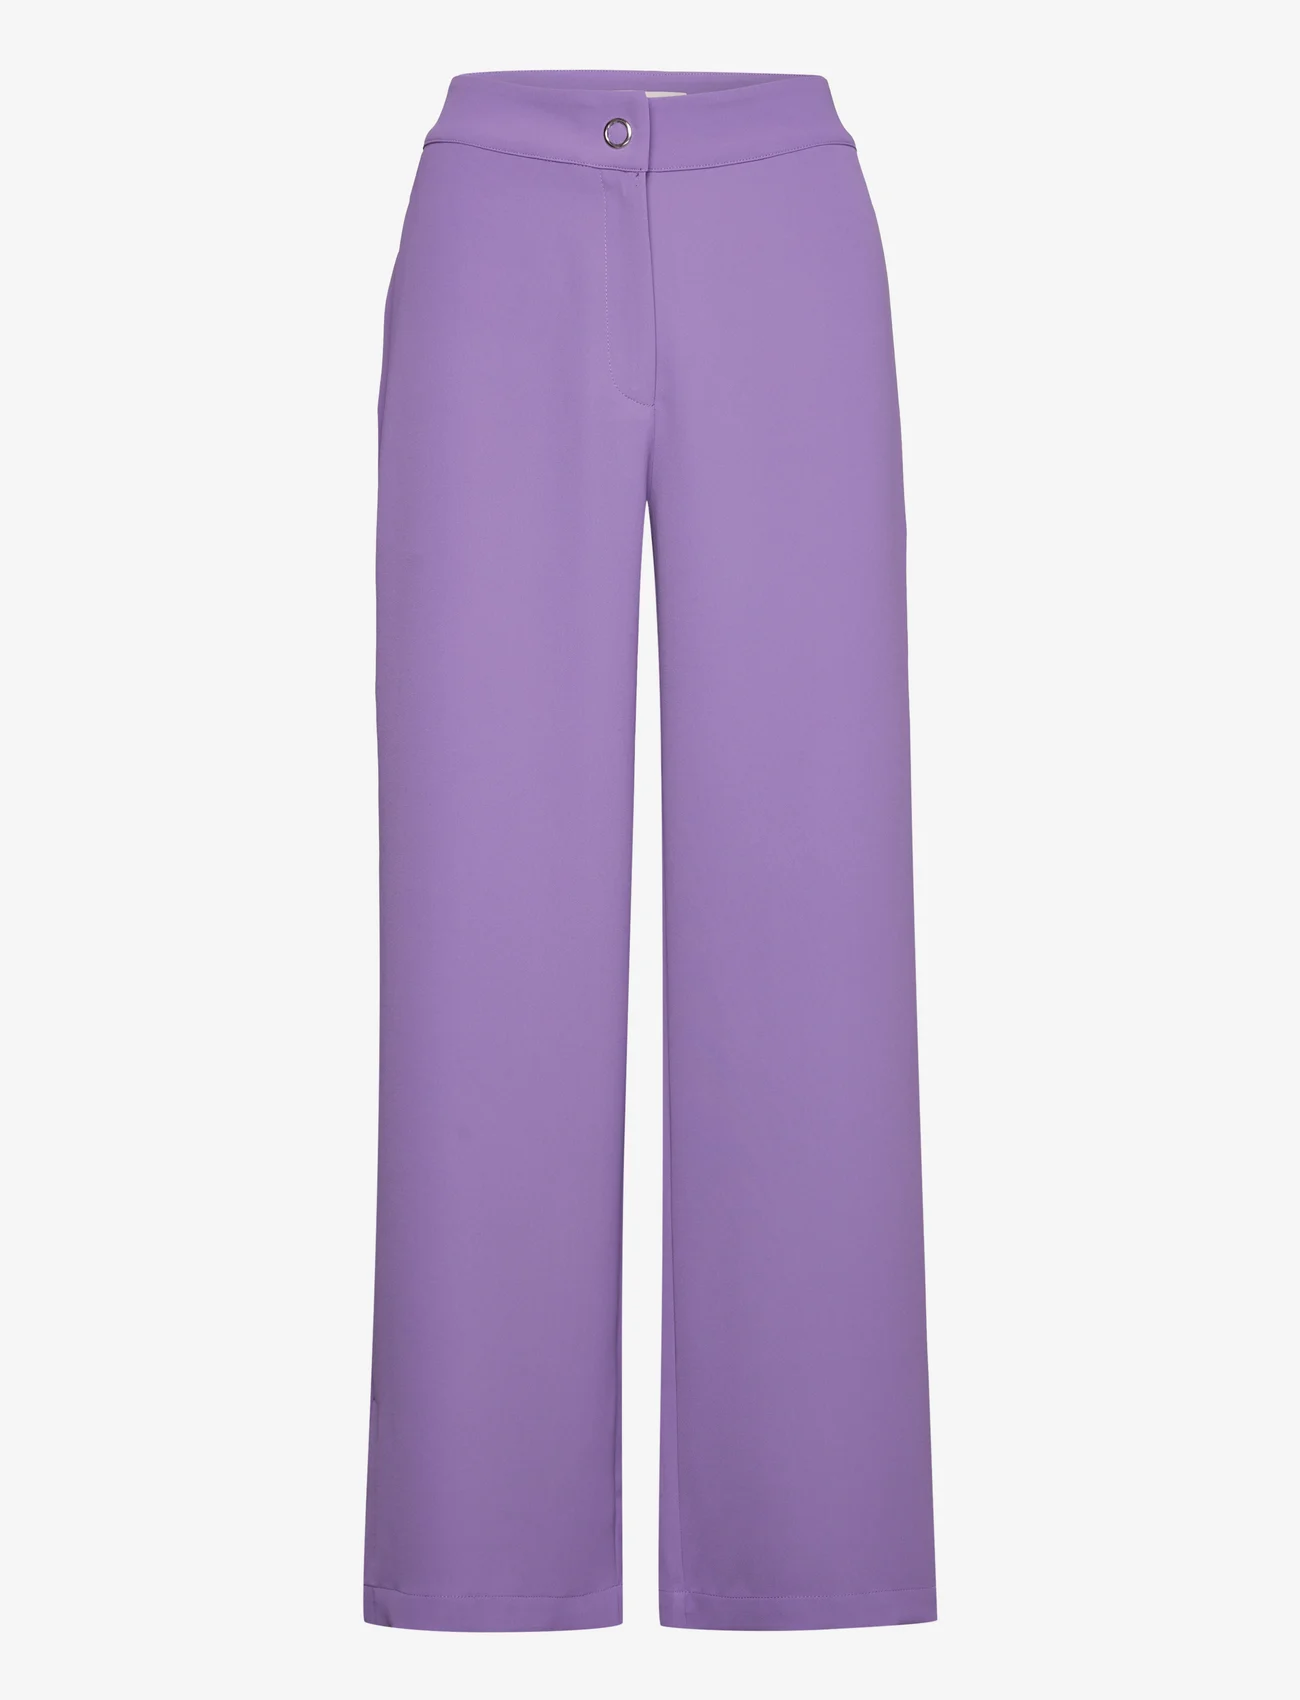 A-View - Vica pant - kostymbyxor - purple - 0